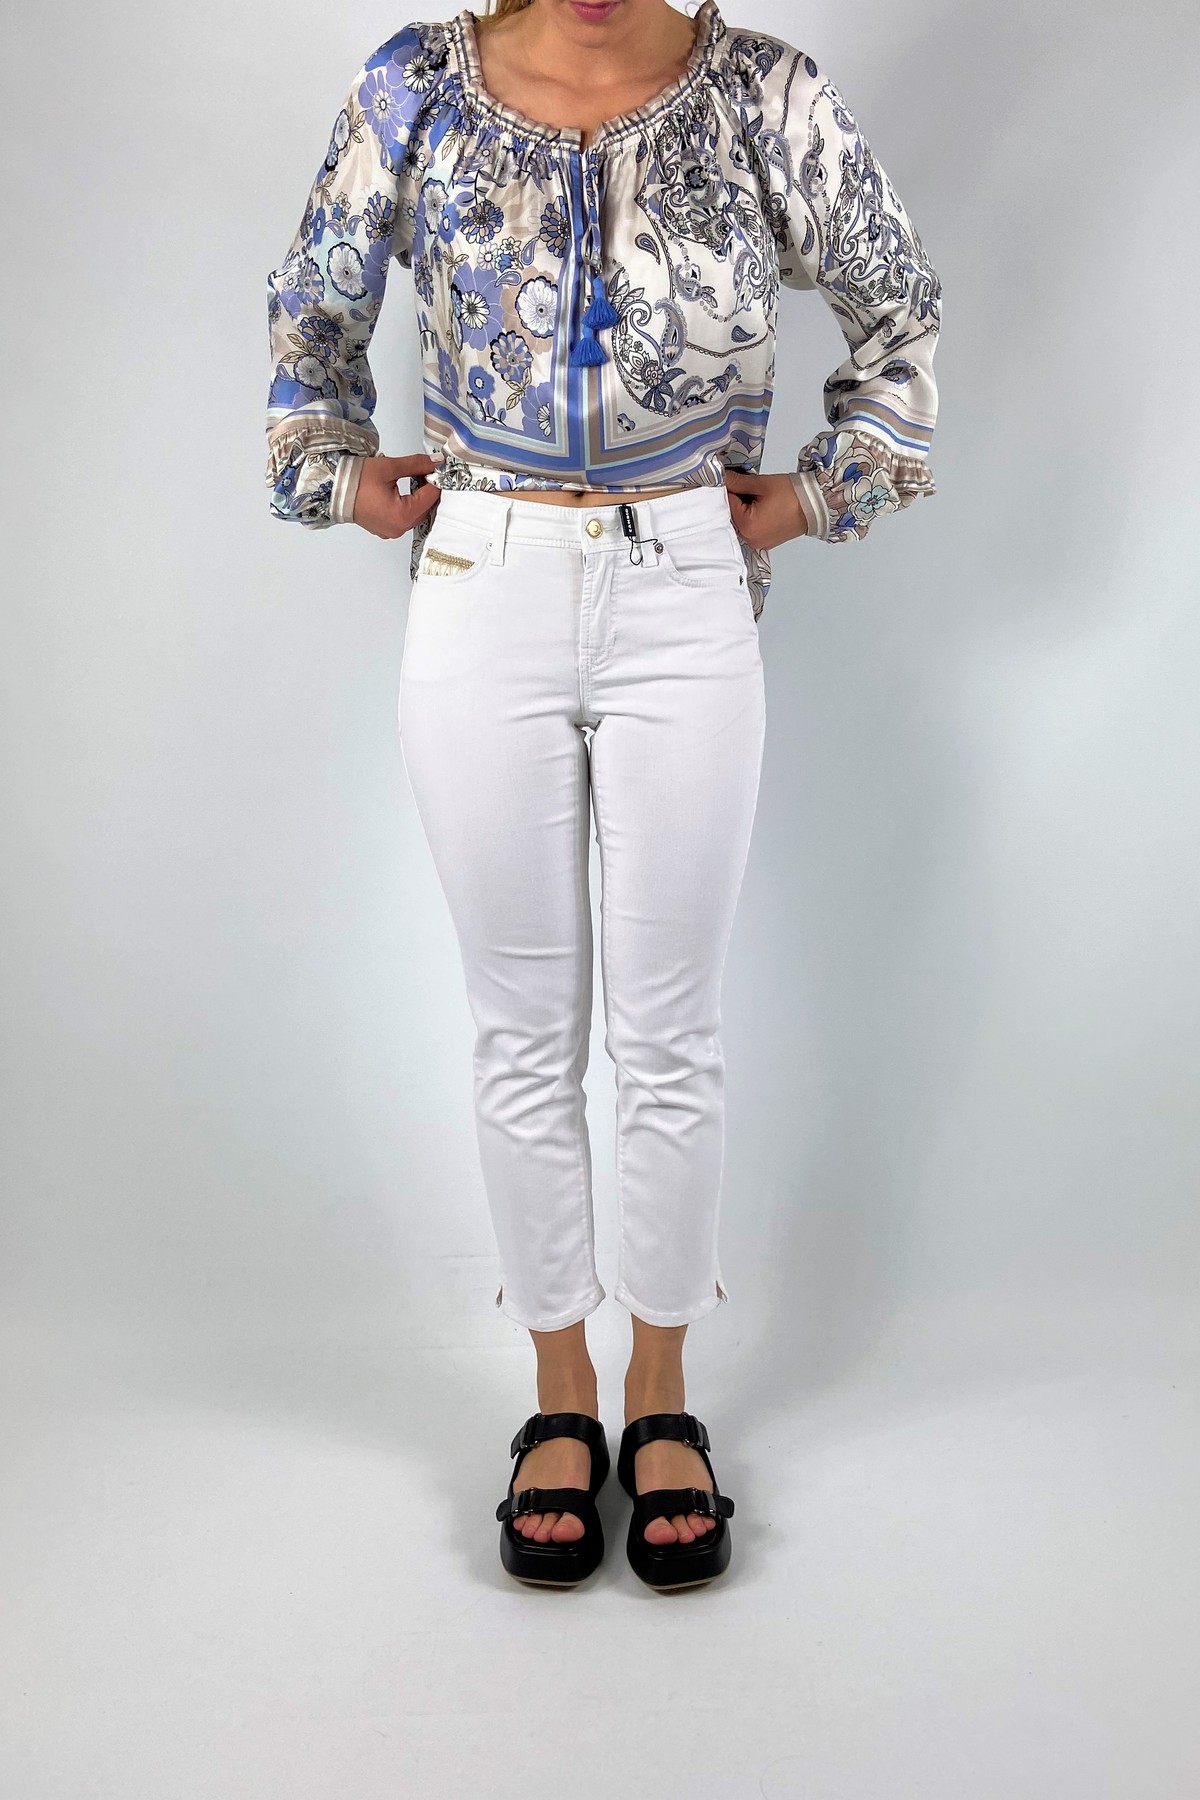 Jeans detail zakje in de kleur wit van het merk Cambio